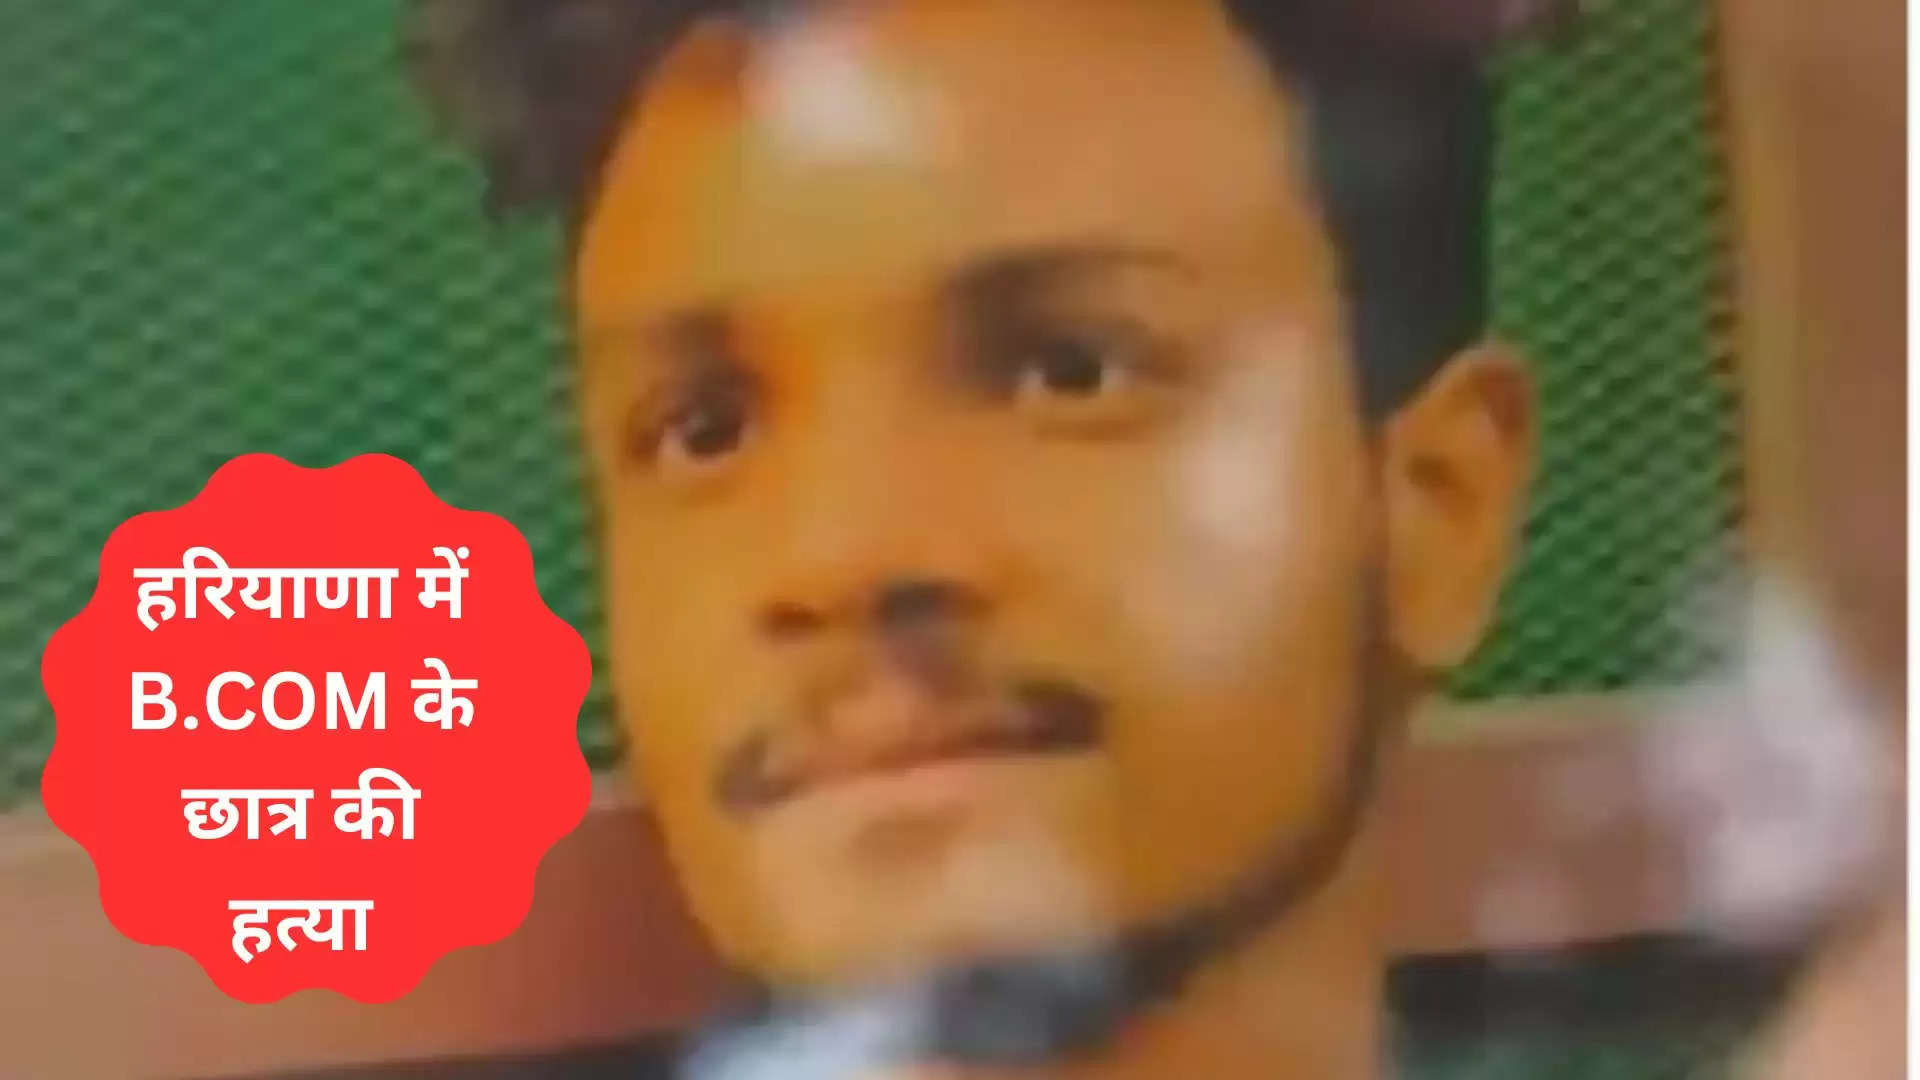 हरियाणा में B.COM के छात्र की हत्या